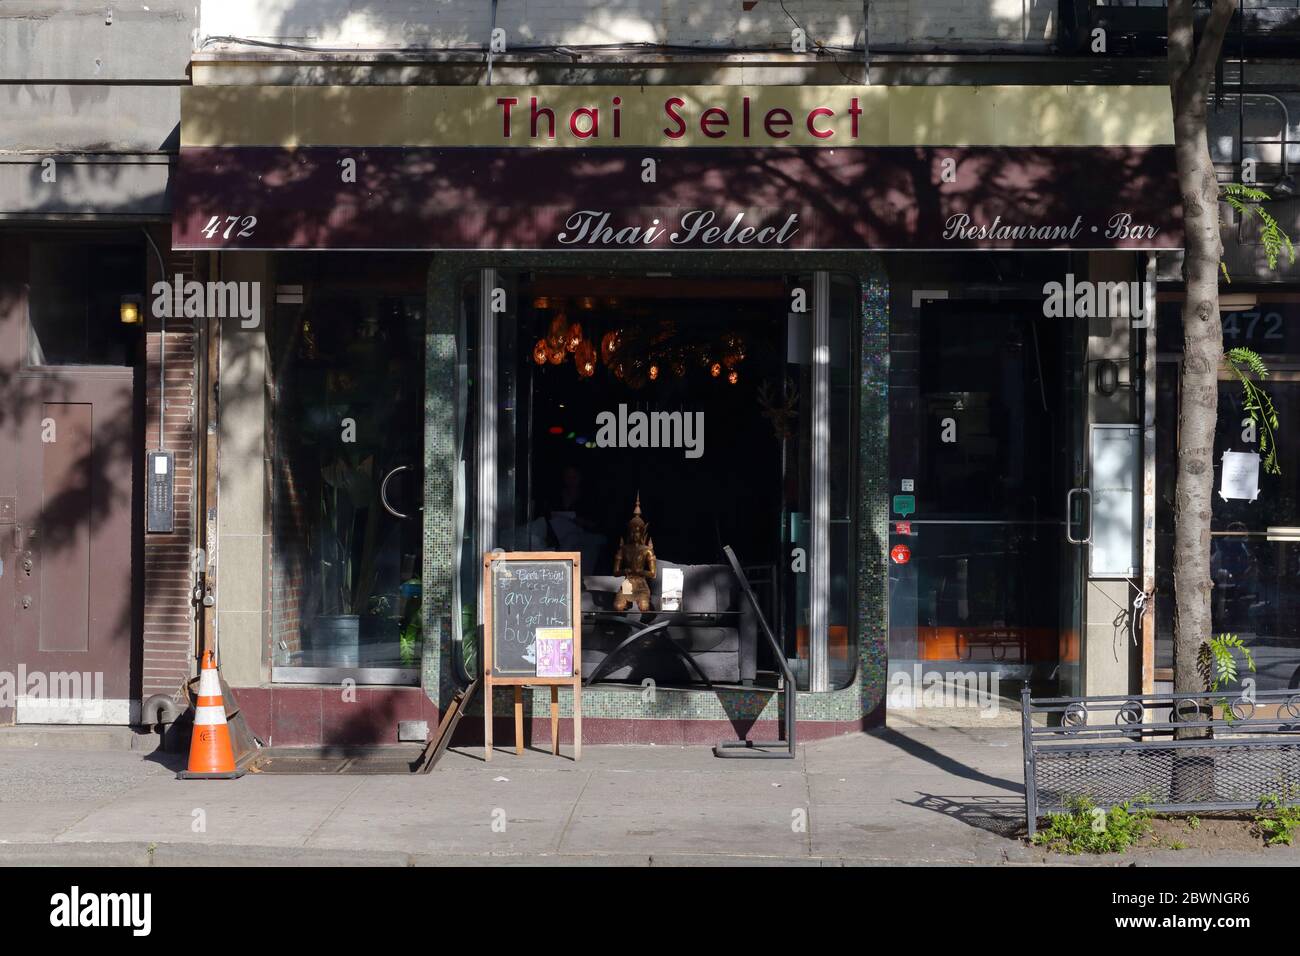 Thai Select NY, 472 Ninth Ave, New York. NYC-Schaufensterfoto eines thailändischen Restaurants im Viertel Hell's Kitchen in Manhattan. Stockfoto